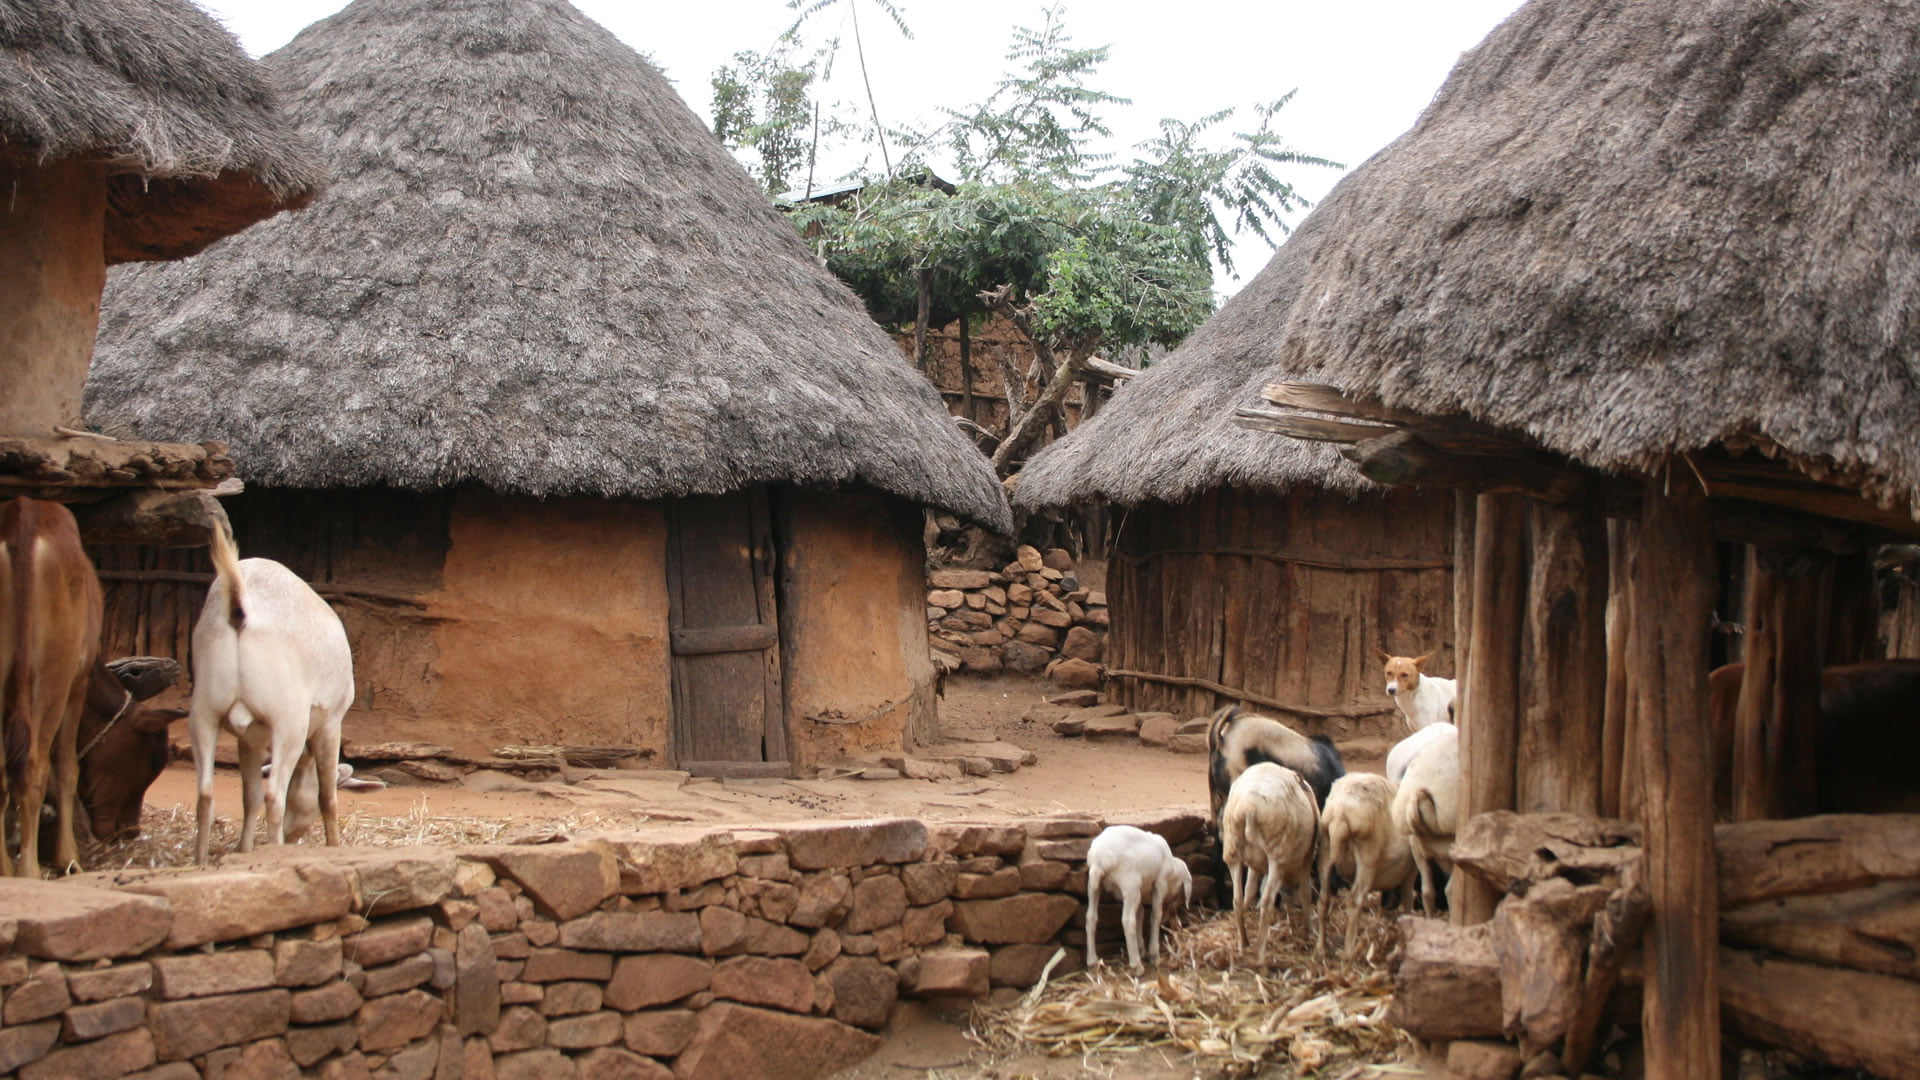 Konso Topluluğunun tipik evleri (Etiyopya)